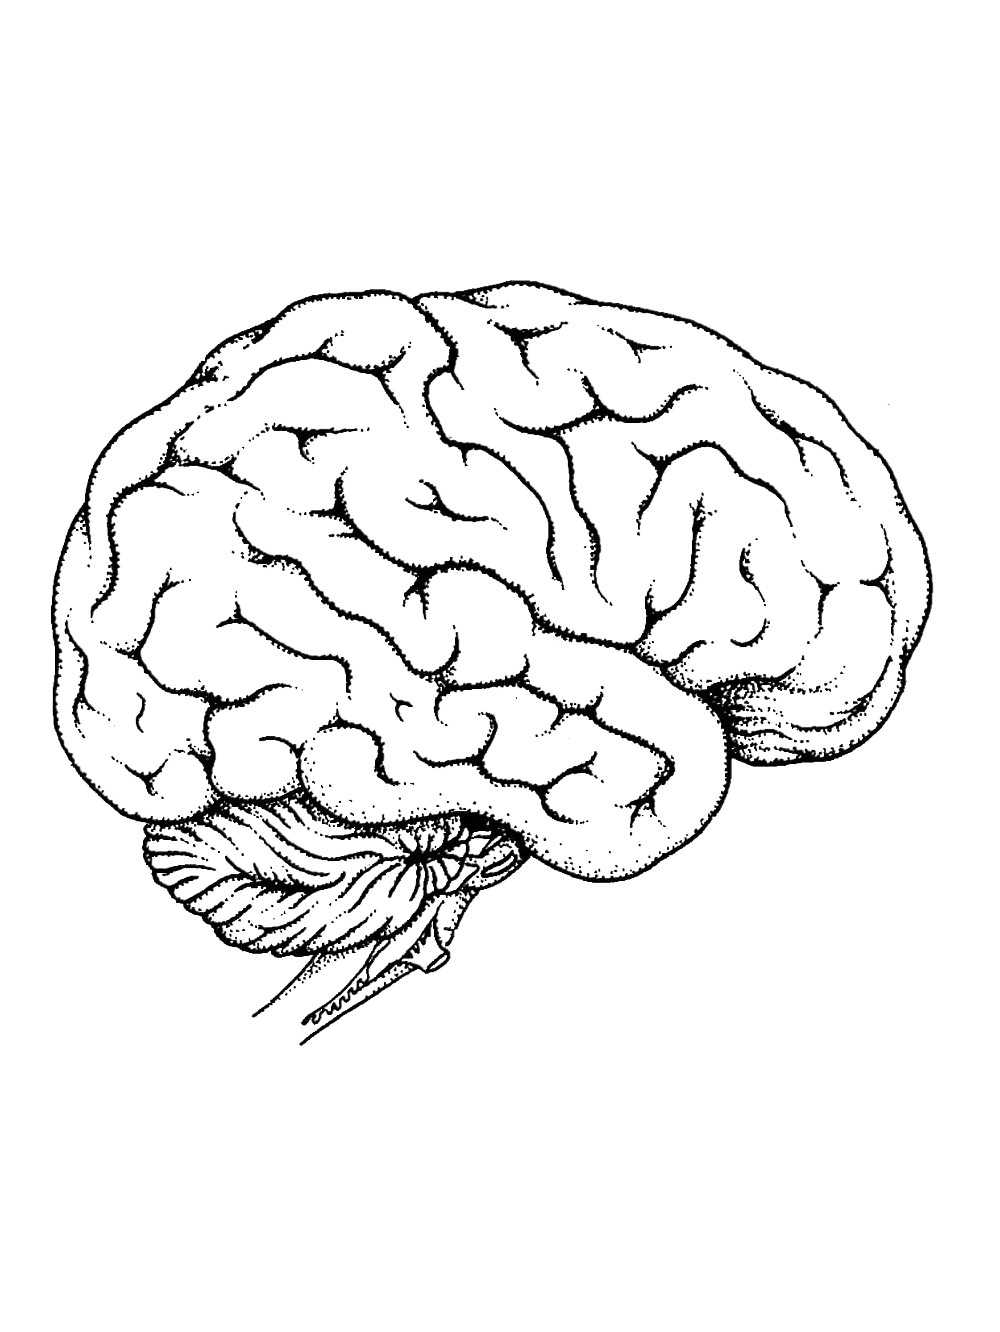 Мозг человека рисунок. Мозг раскраска для детей. Мозг эскиз. Головной мозг раскраска. Рисунок мозга легко